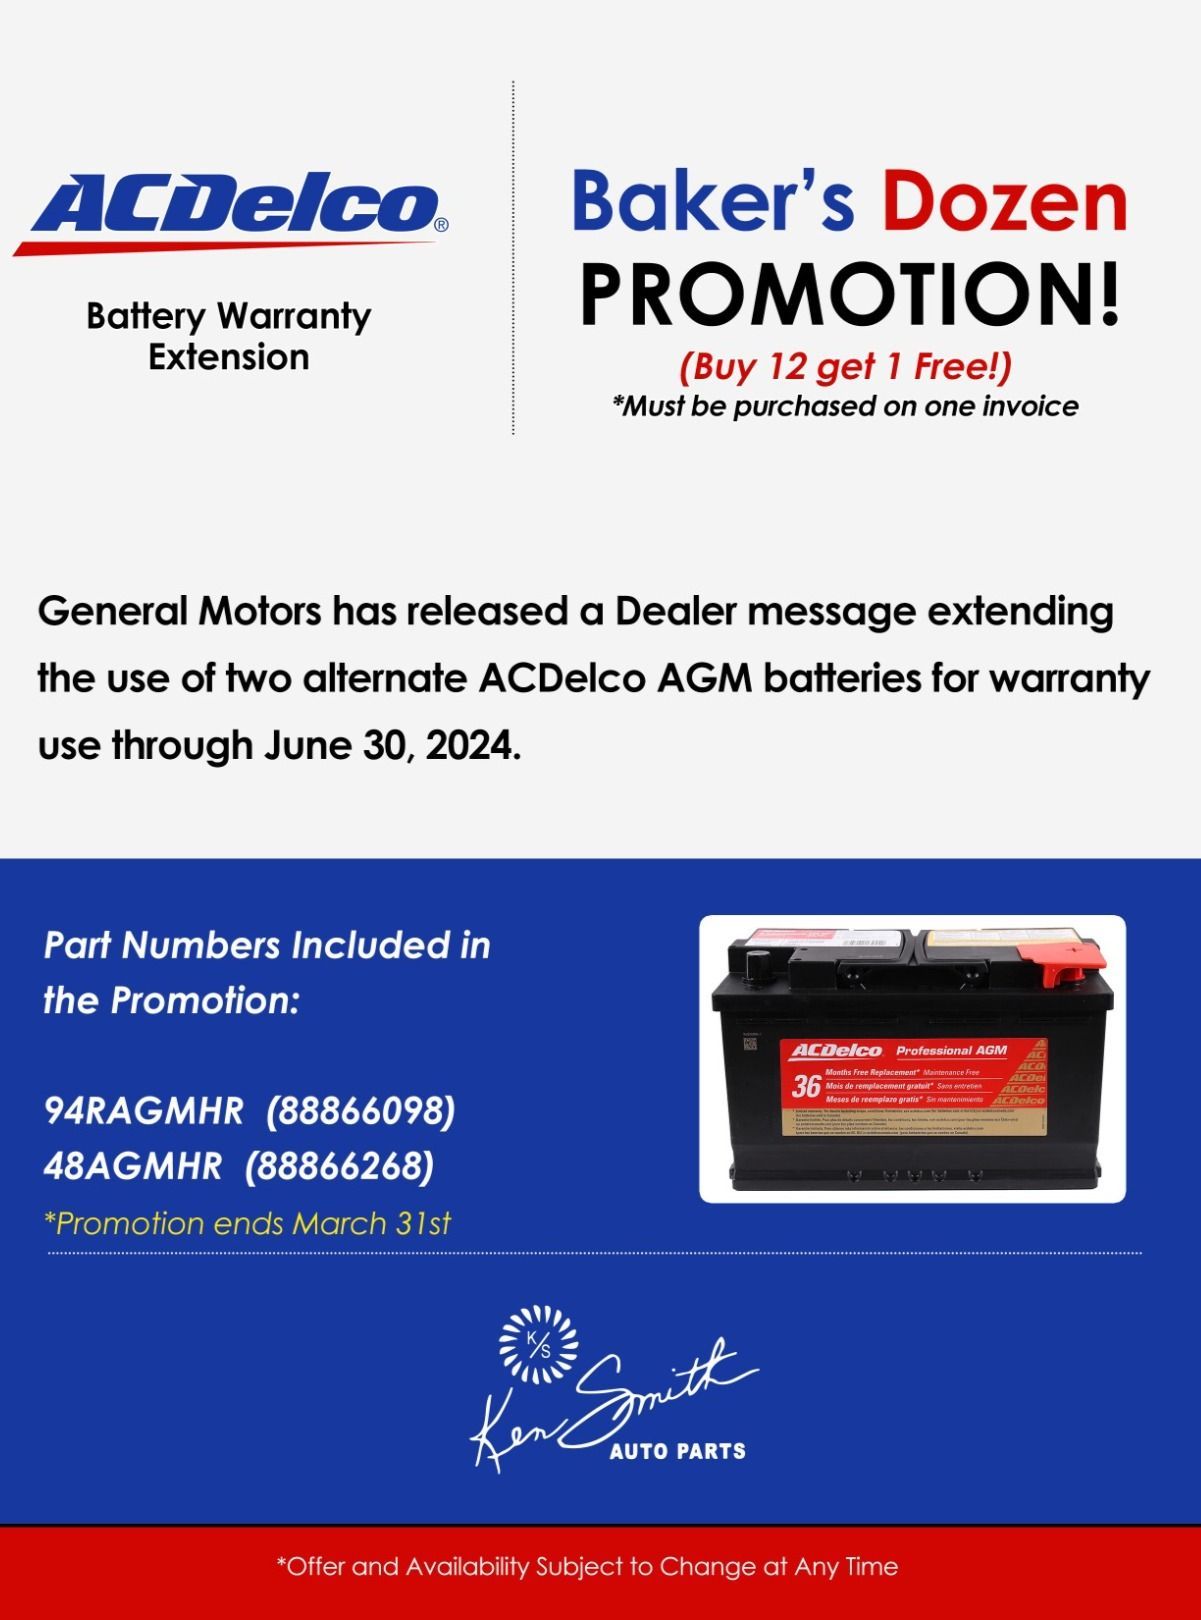 ACDelco Baker's Dozen Battery Promotion